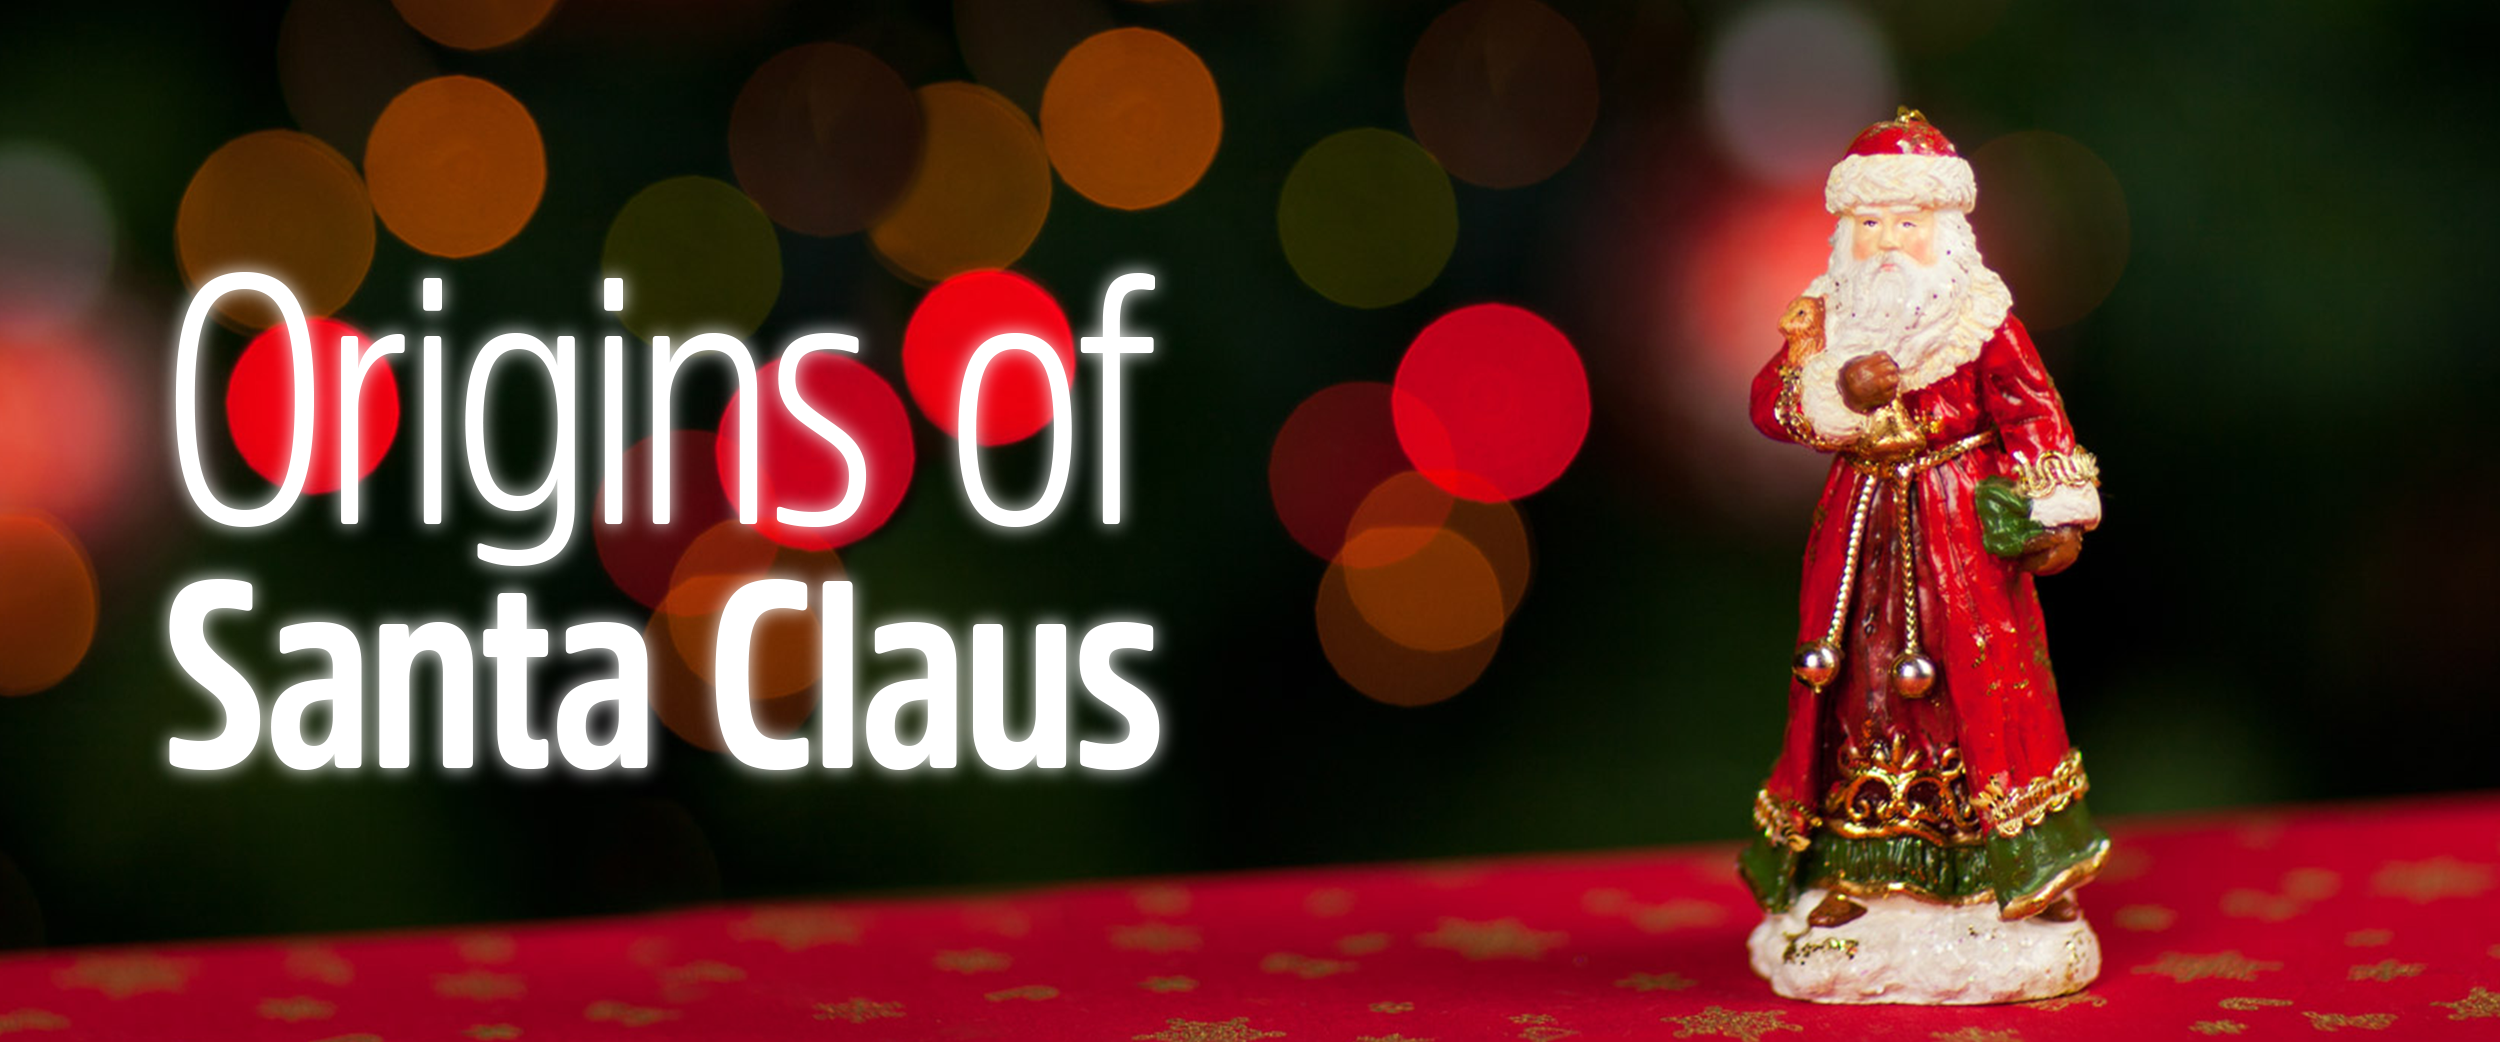 Origins of Santa Claus and Christmas